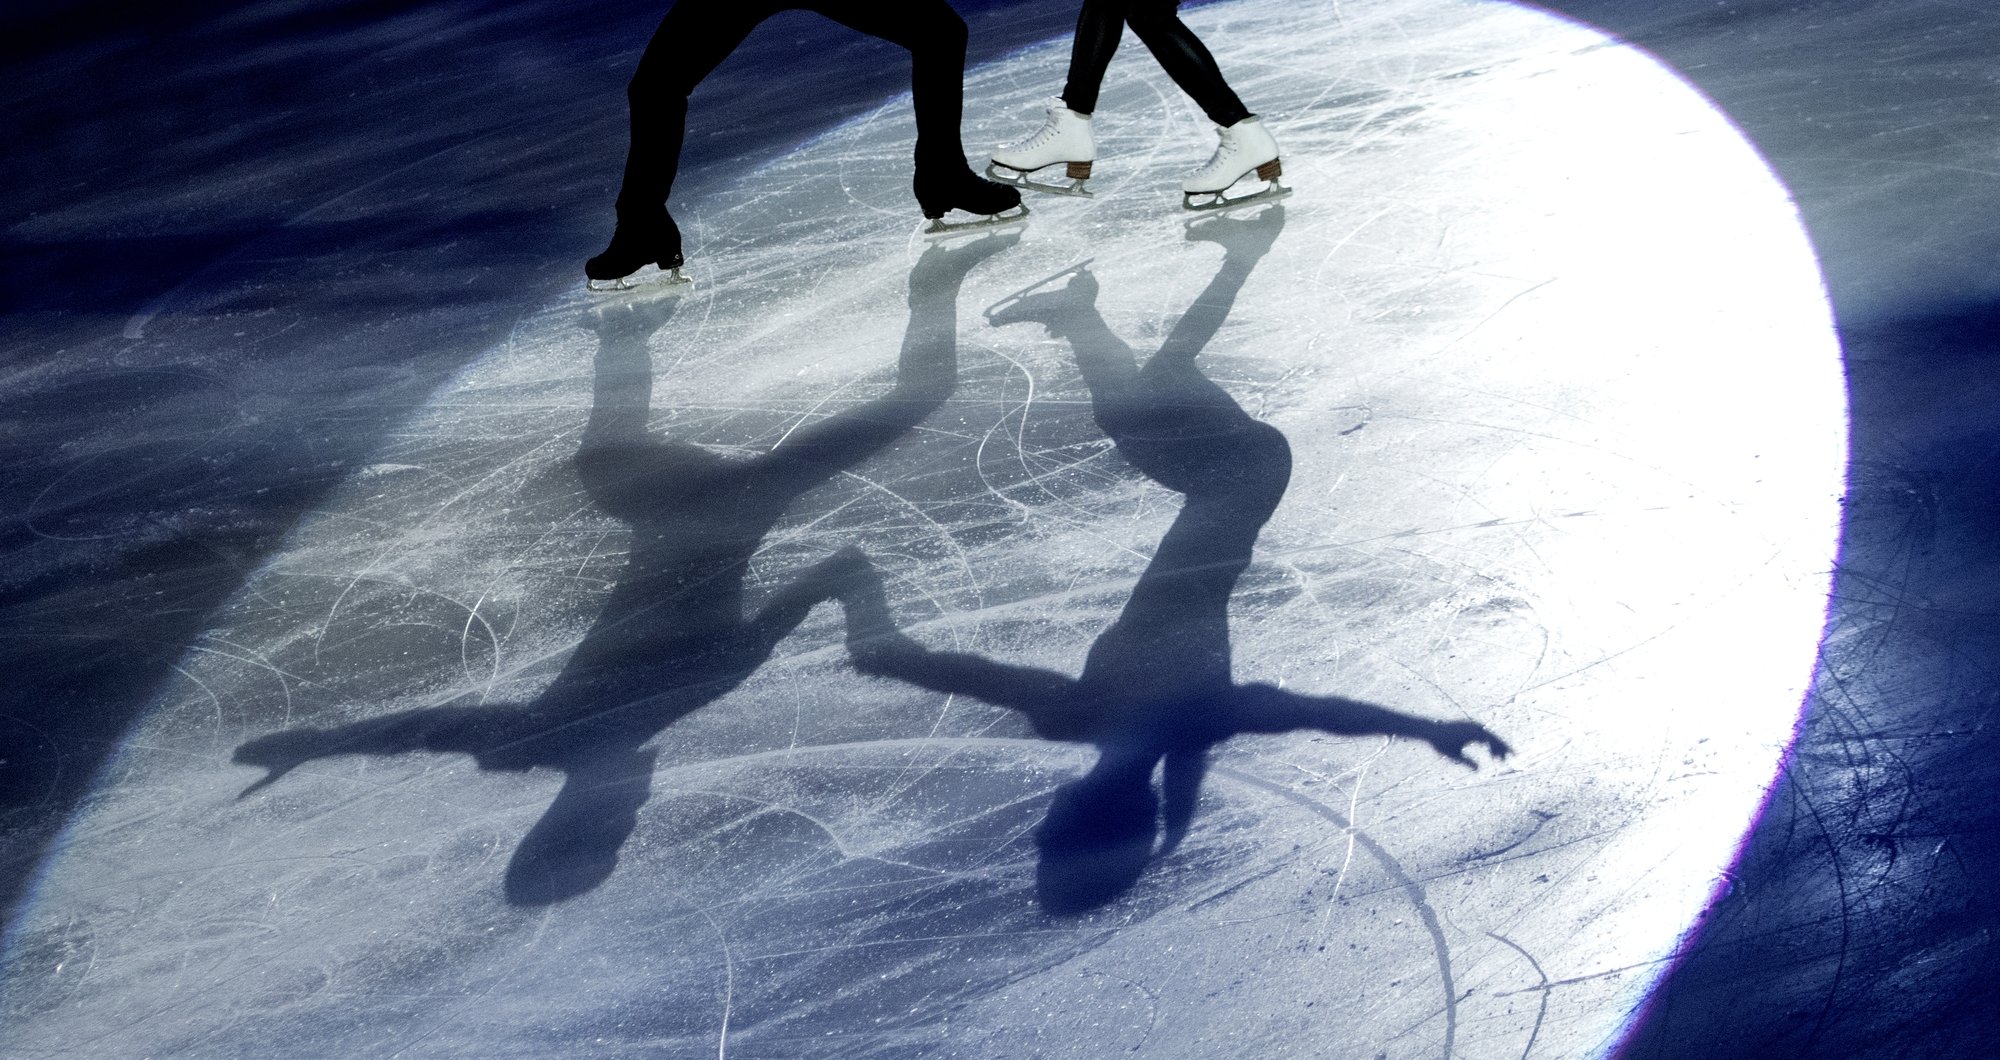 Le scandale des abus sexuels en France a éclaté dans le patinage artistique. Mais de nombreux autres sports sont aussi concernés.